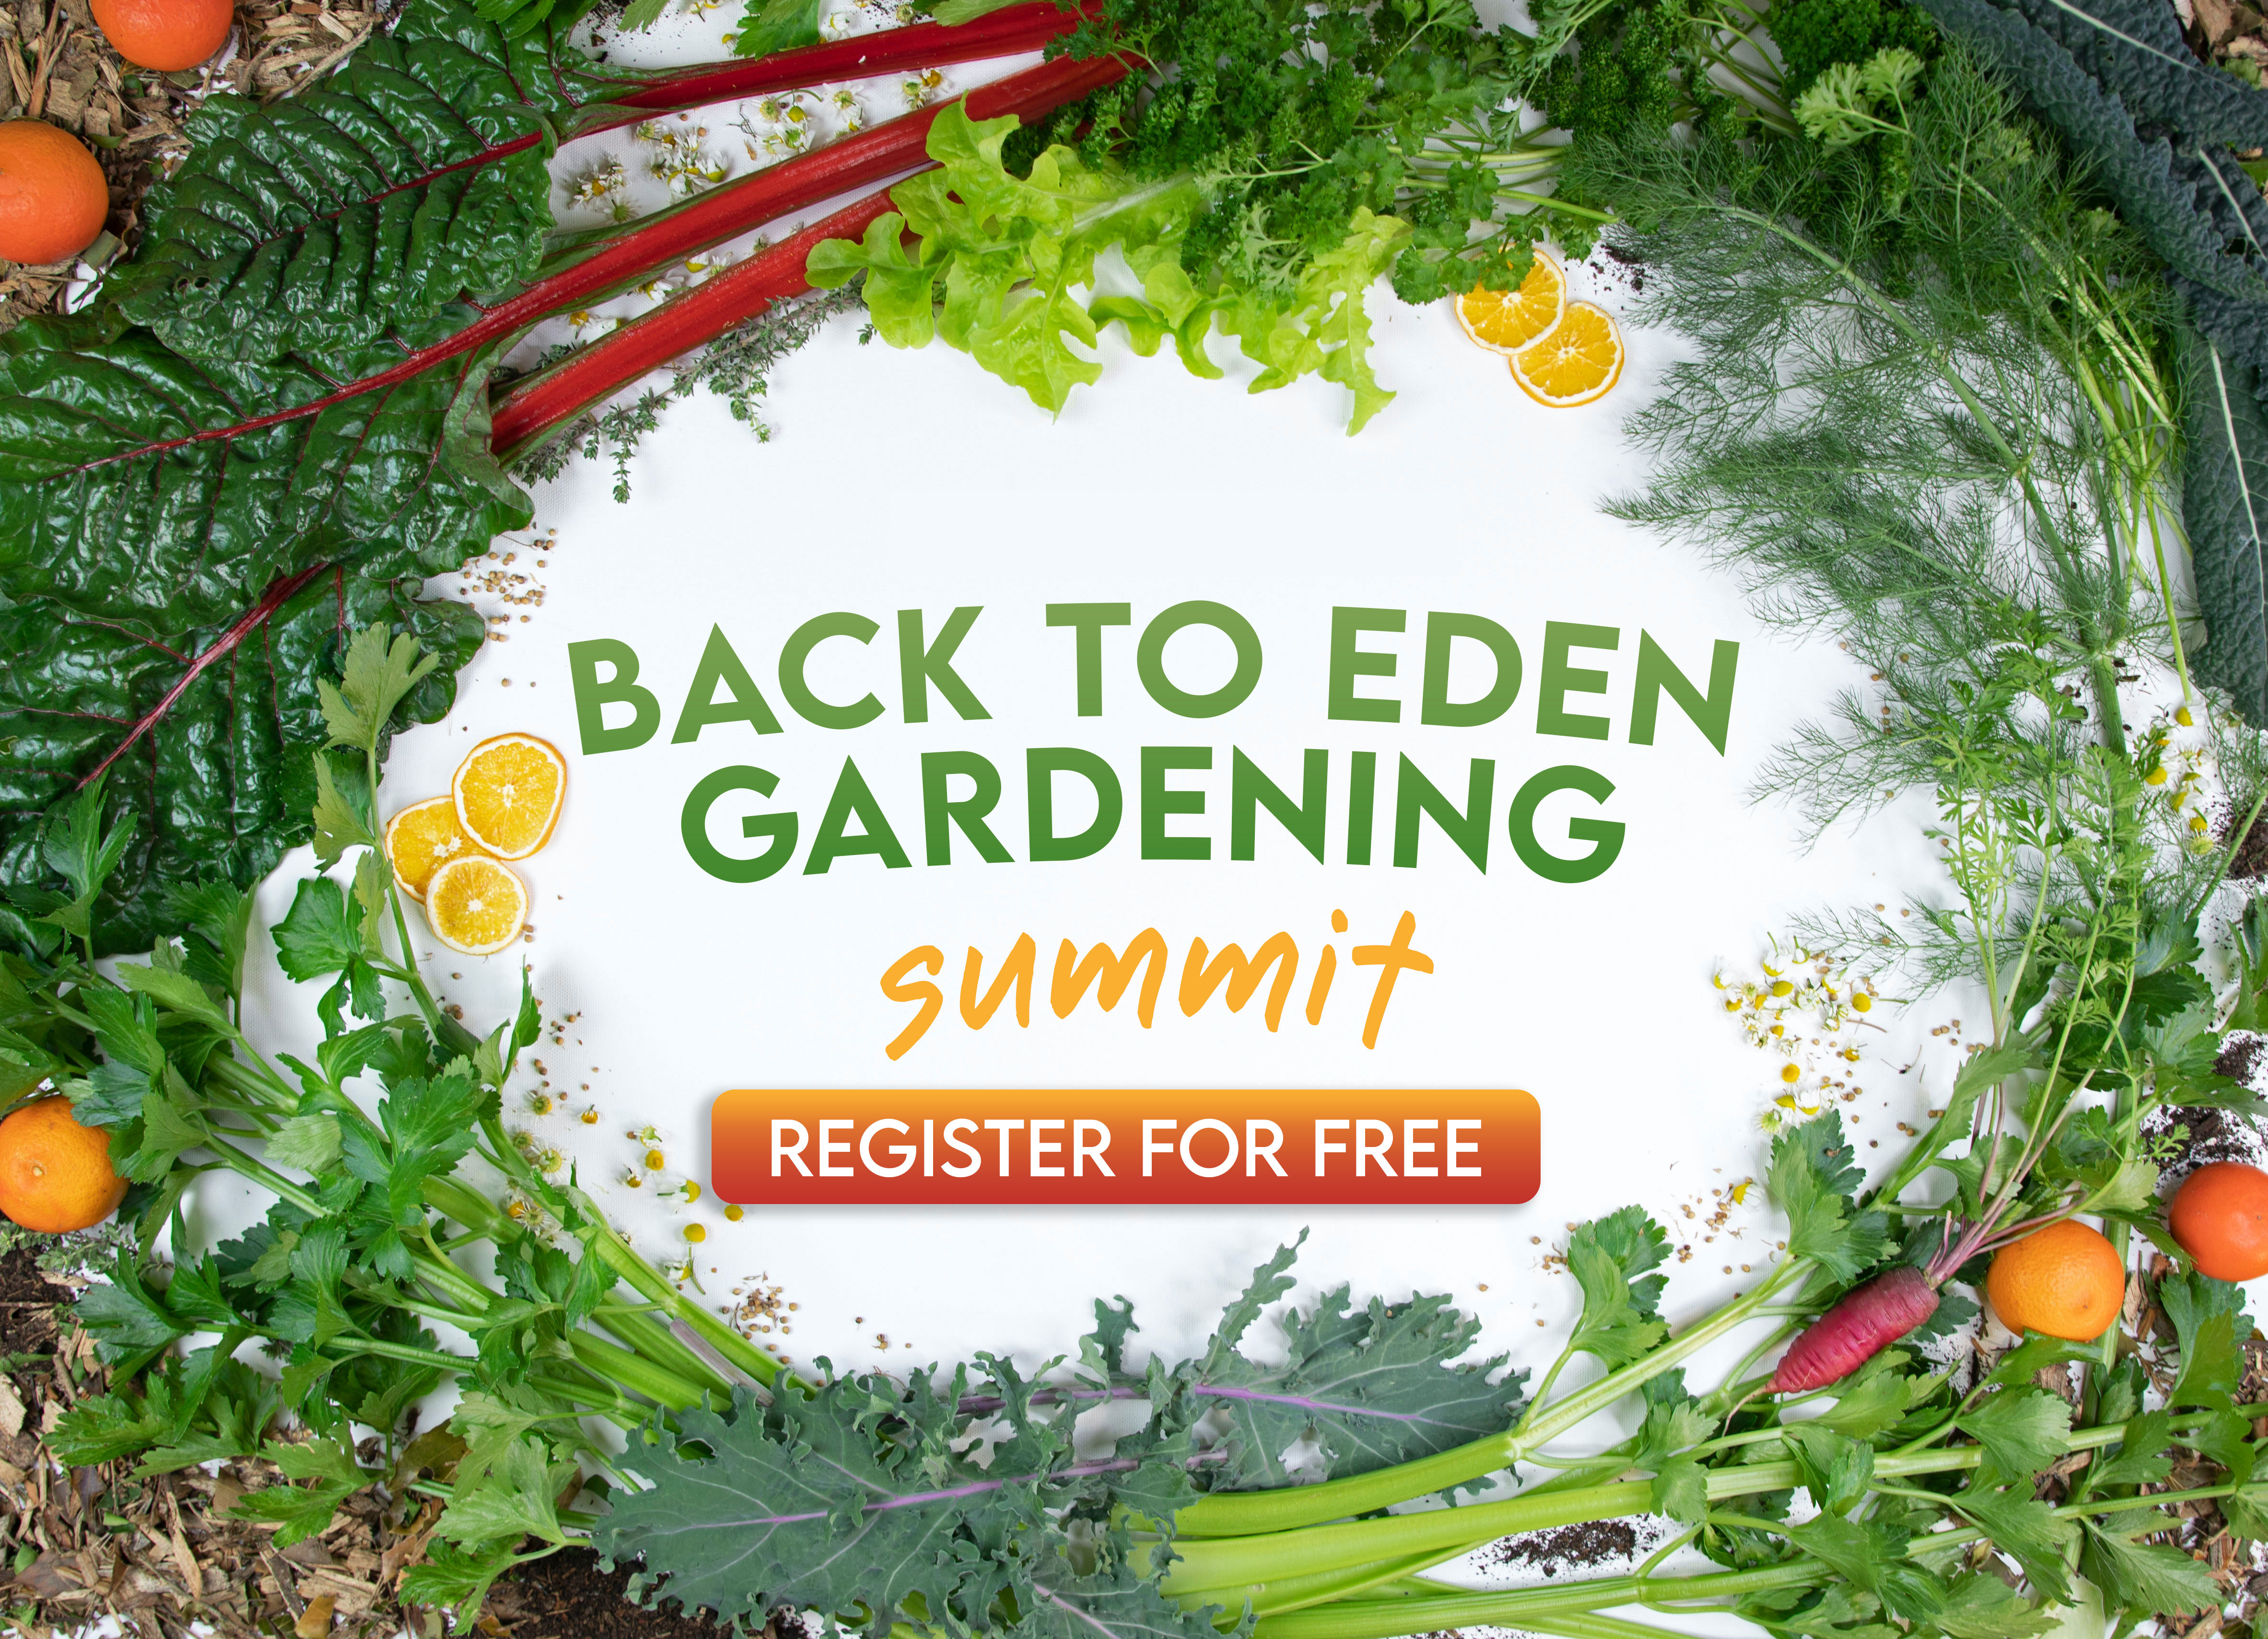 Back to Eden Gardening Summit